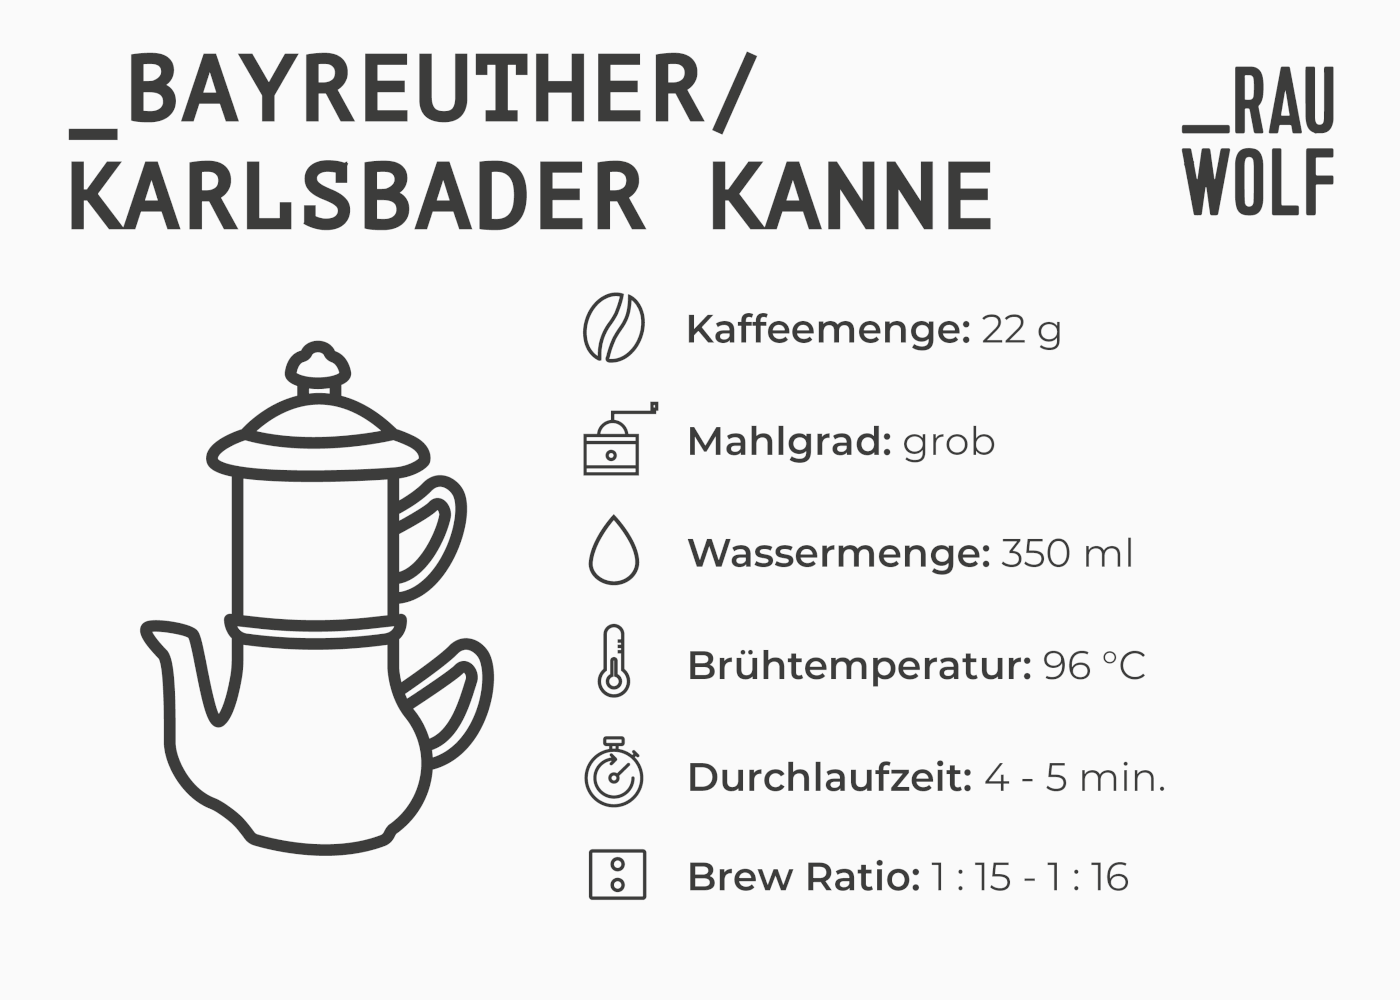 Zubereitung in Bayreuther/Karlsbader Kanne: Mahlgrad, Temperatur etc.